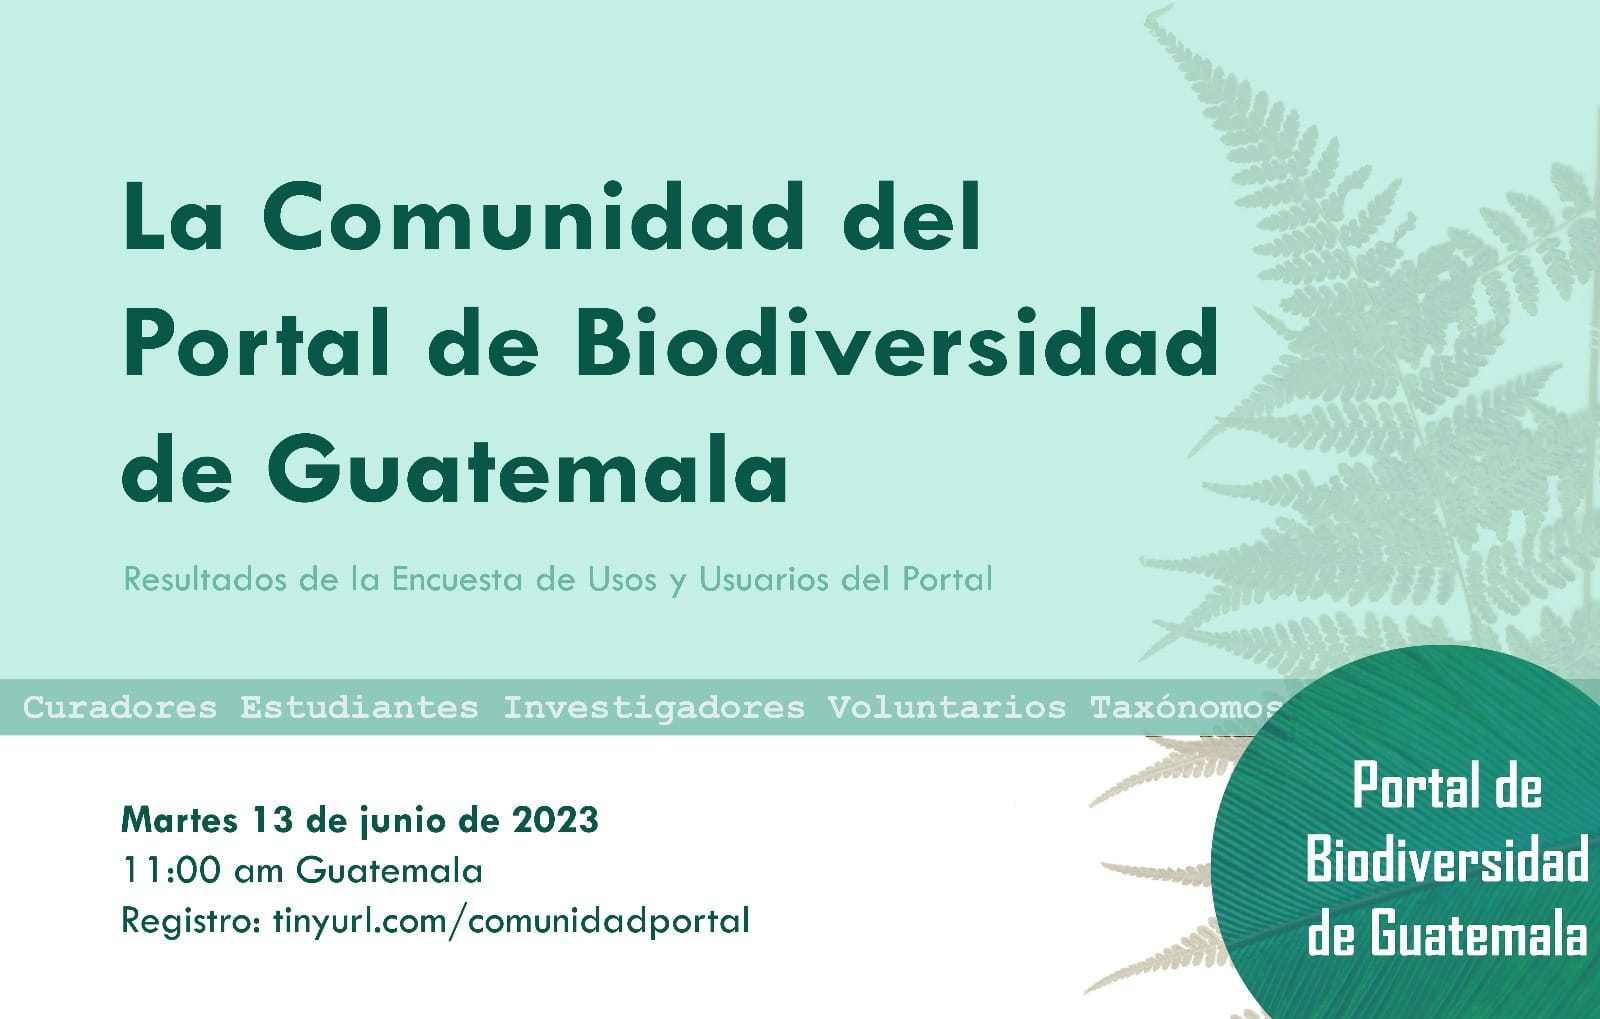 La Comunidad del Portal de Biodiversidad